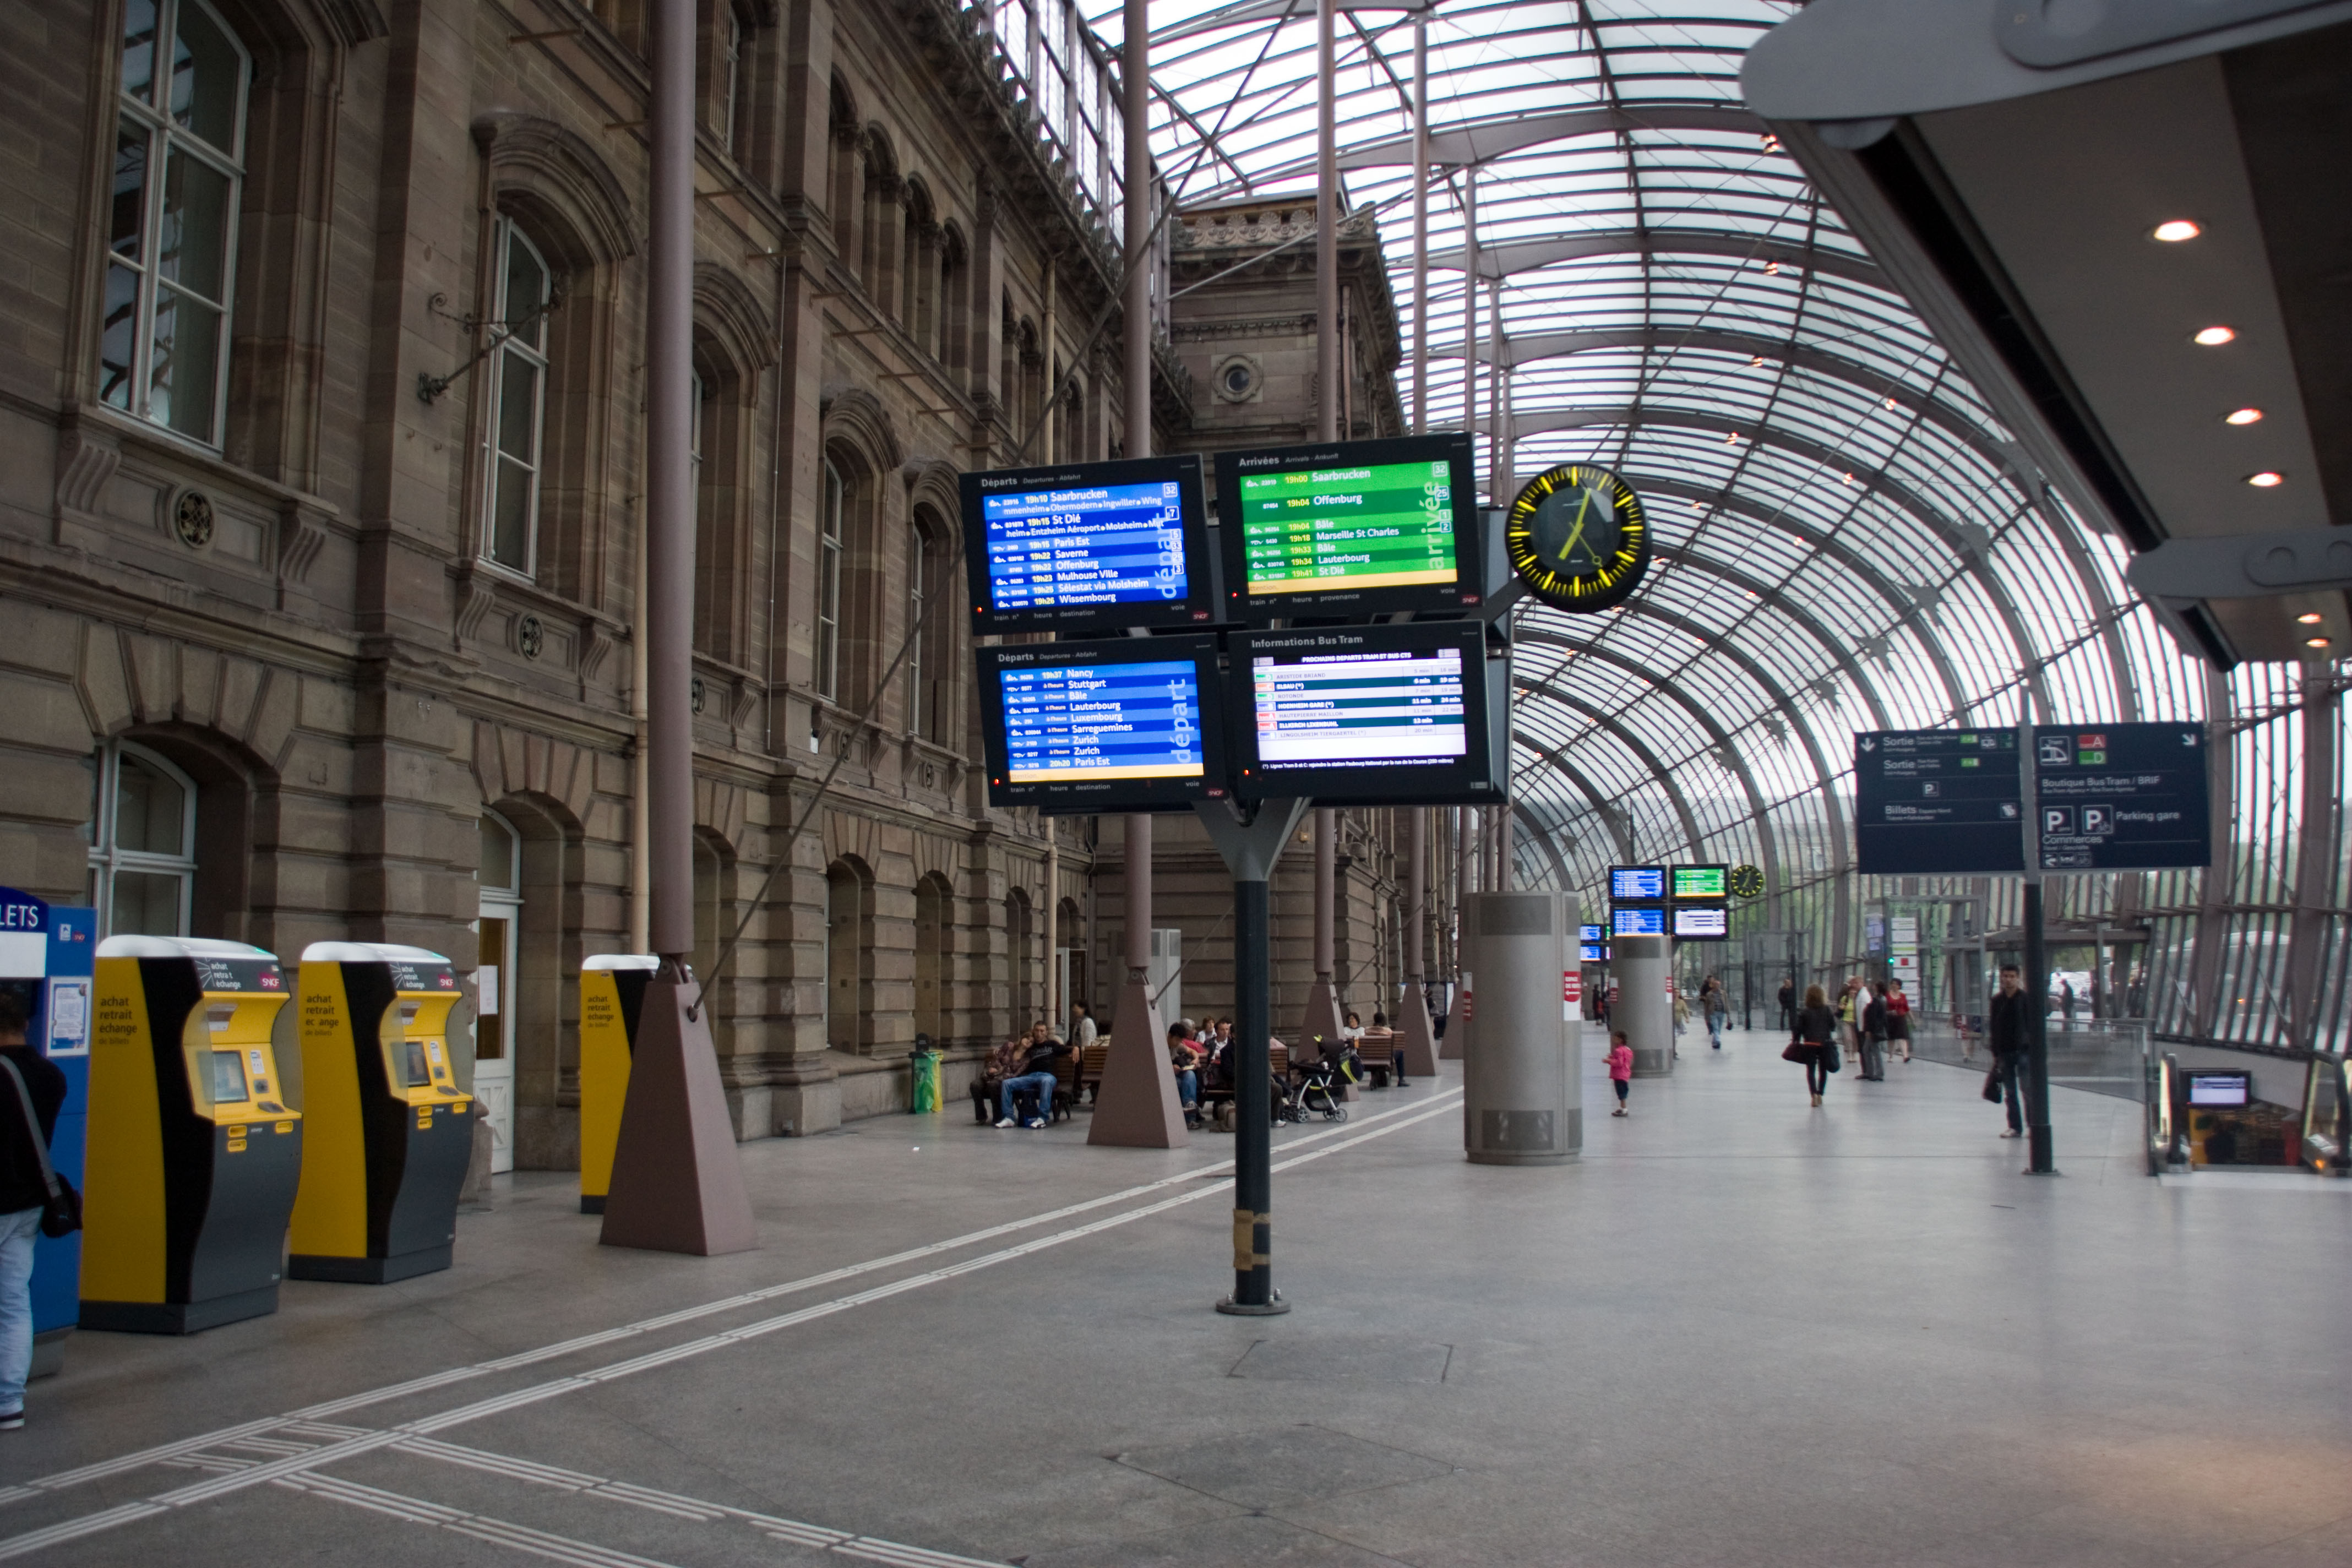 RÃ©sultat de recherche d'images pour "photos gare de strasbourg"